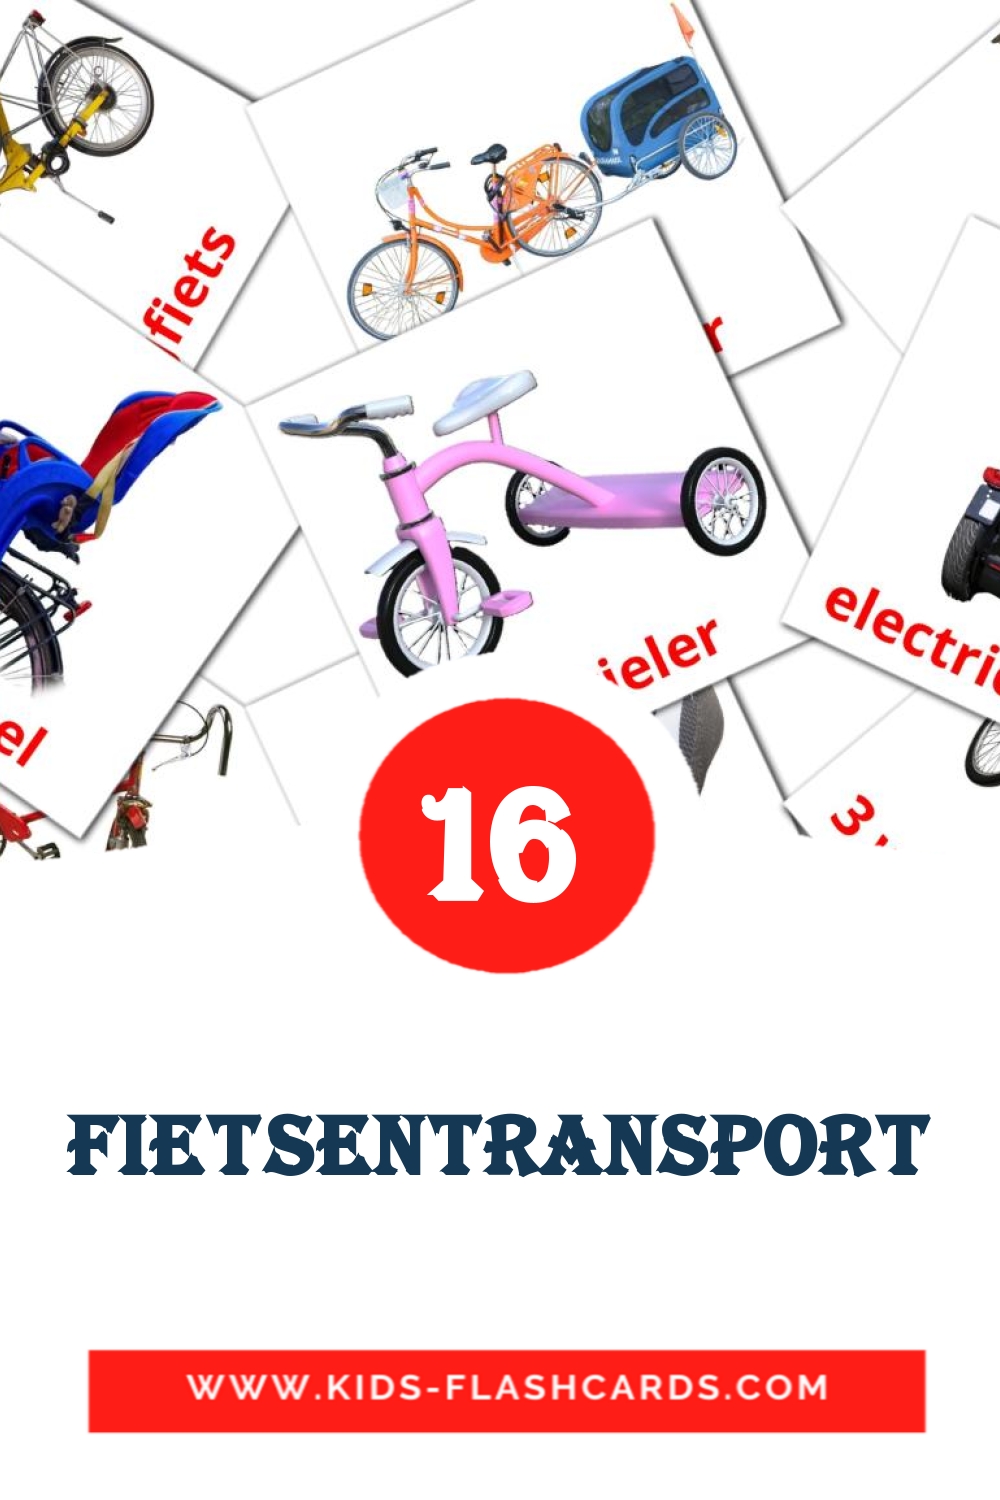 Fietsentransport на нидерландcком для Детского Сада (16 карточек)